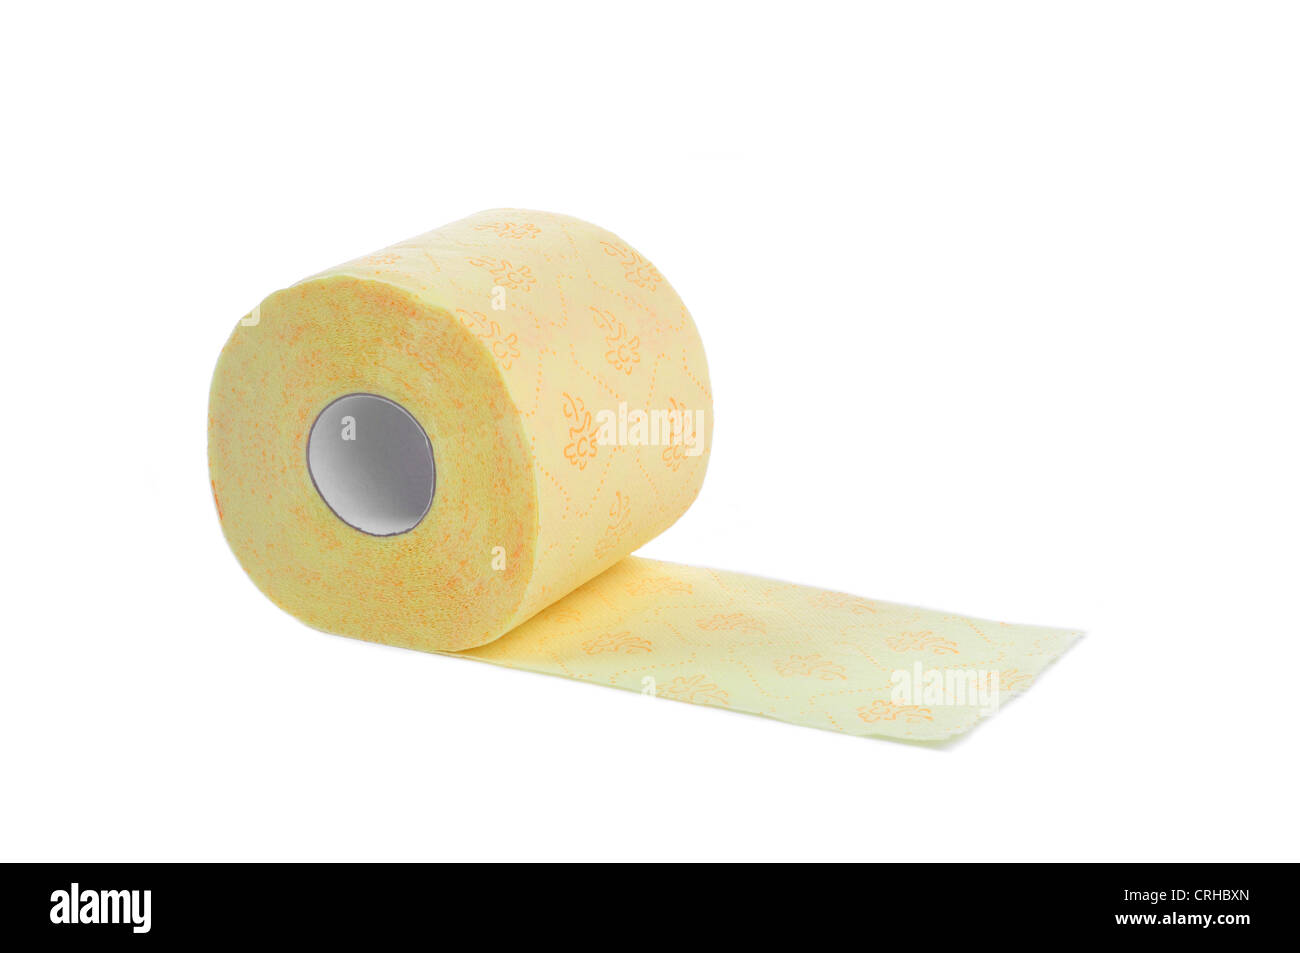 yellow toilet paper on white, background Stock Photo